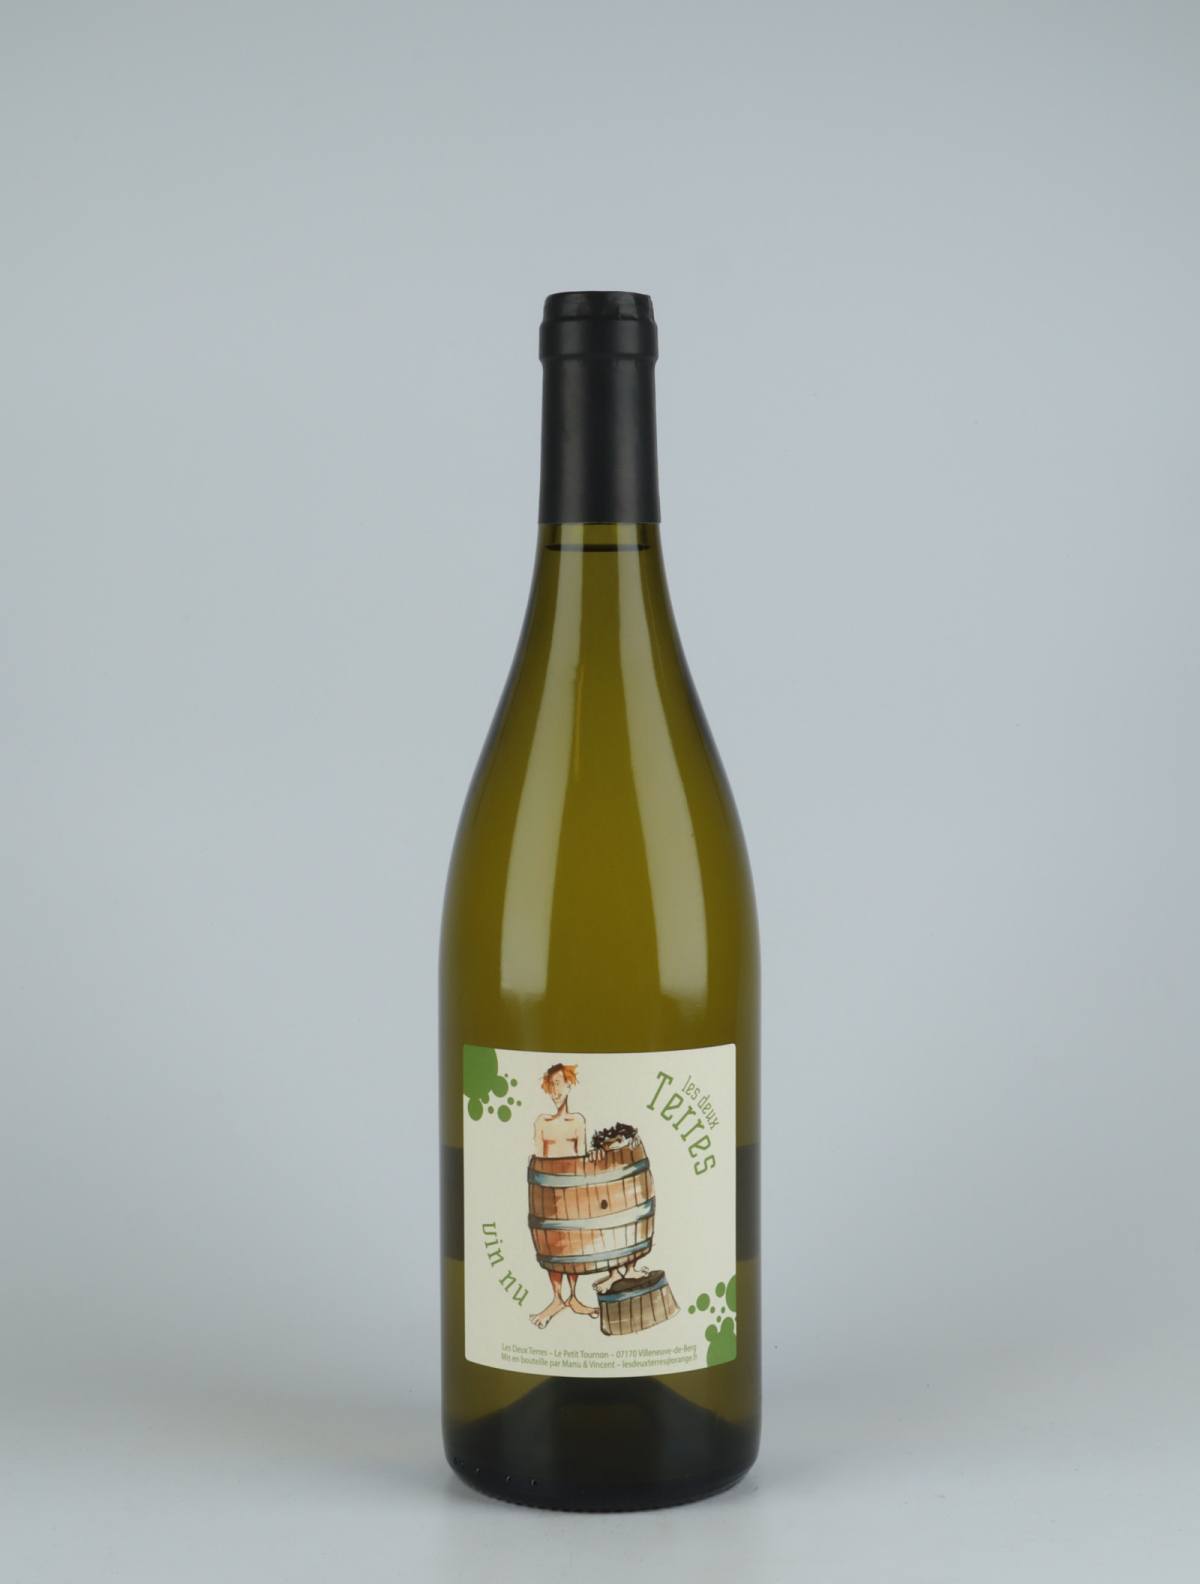 En flaske 2020 Vin Nu Blanc Hvidvin fra Les Deux Terres, Ardèche i Frankrig